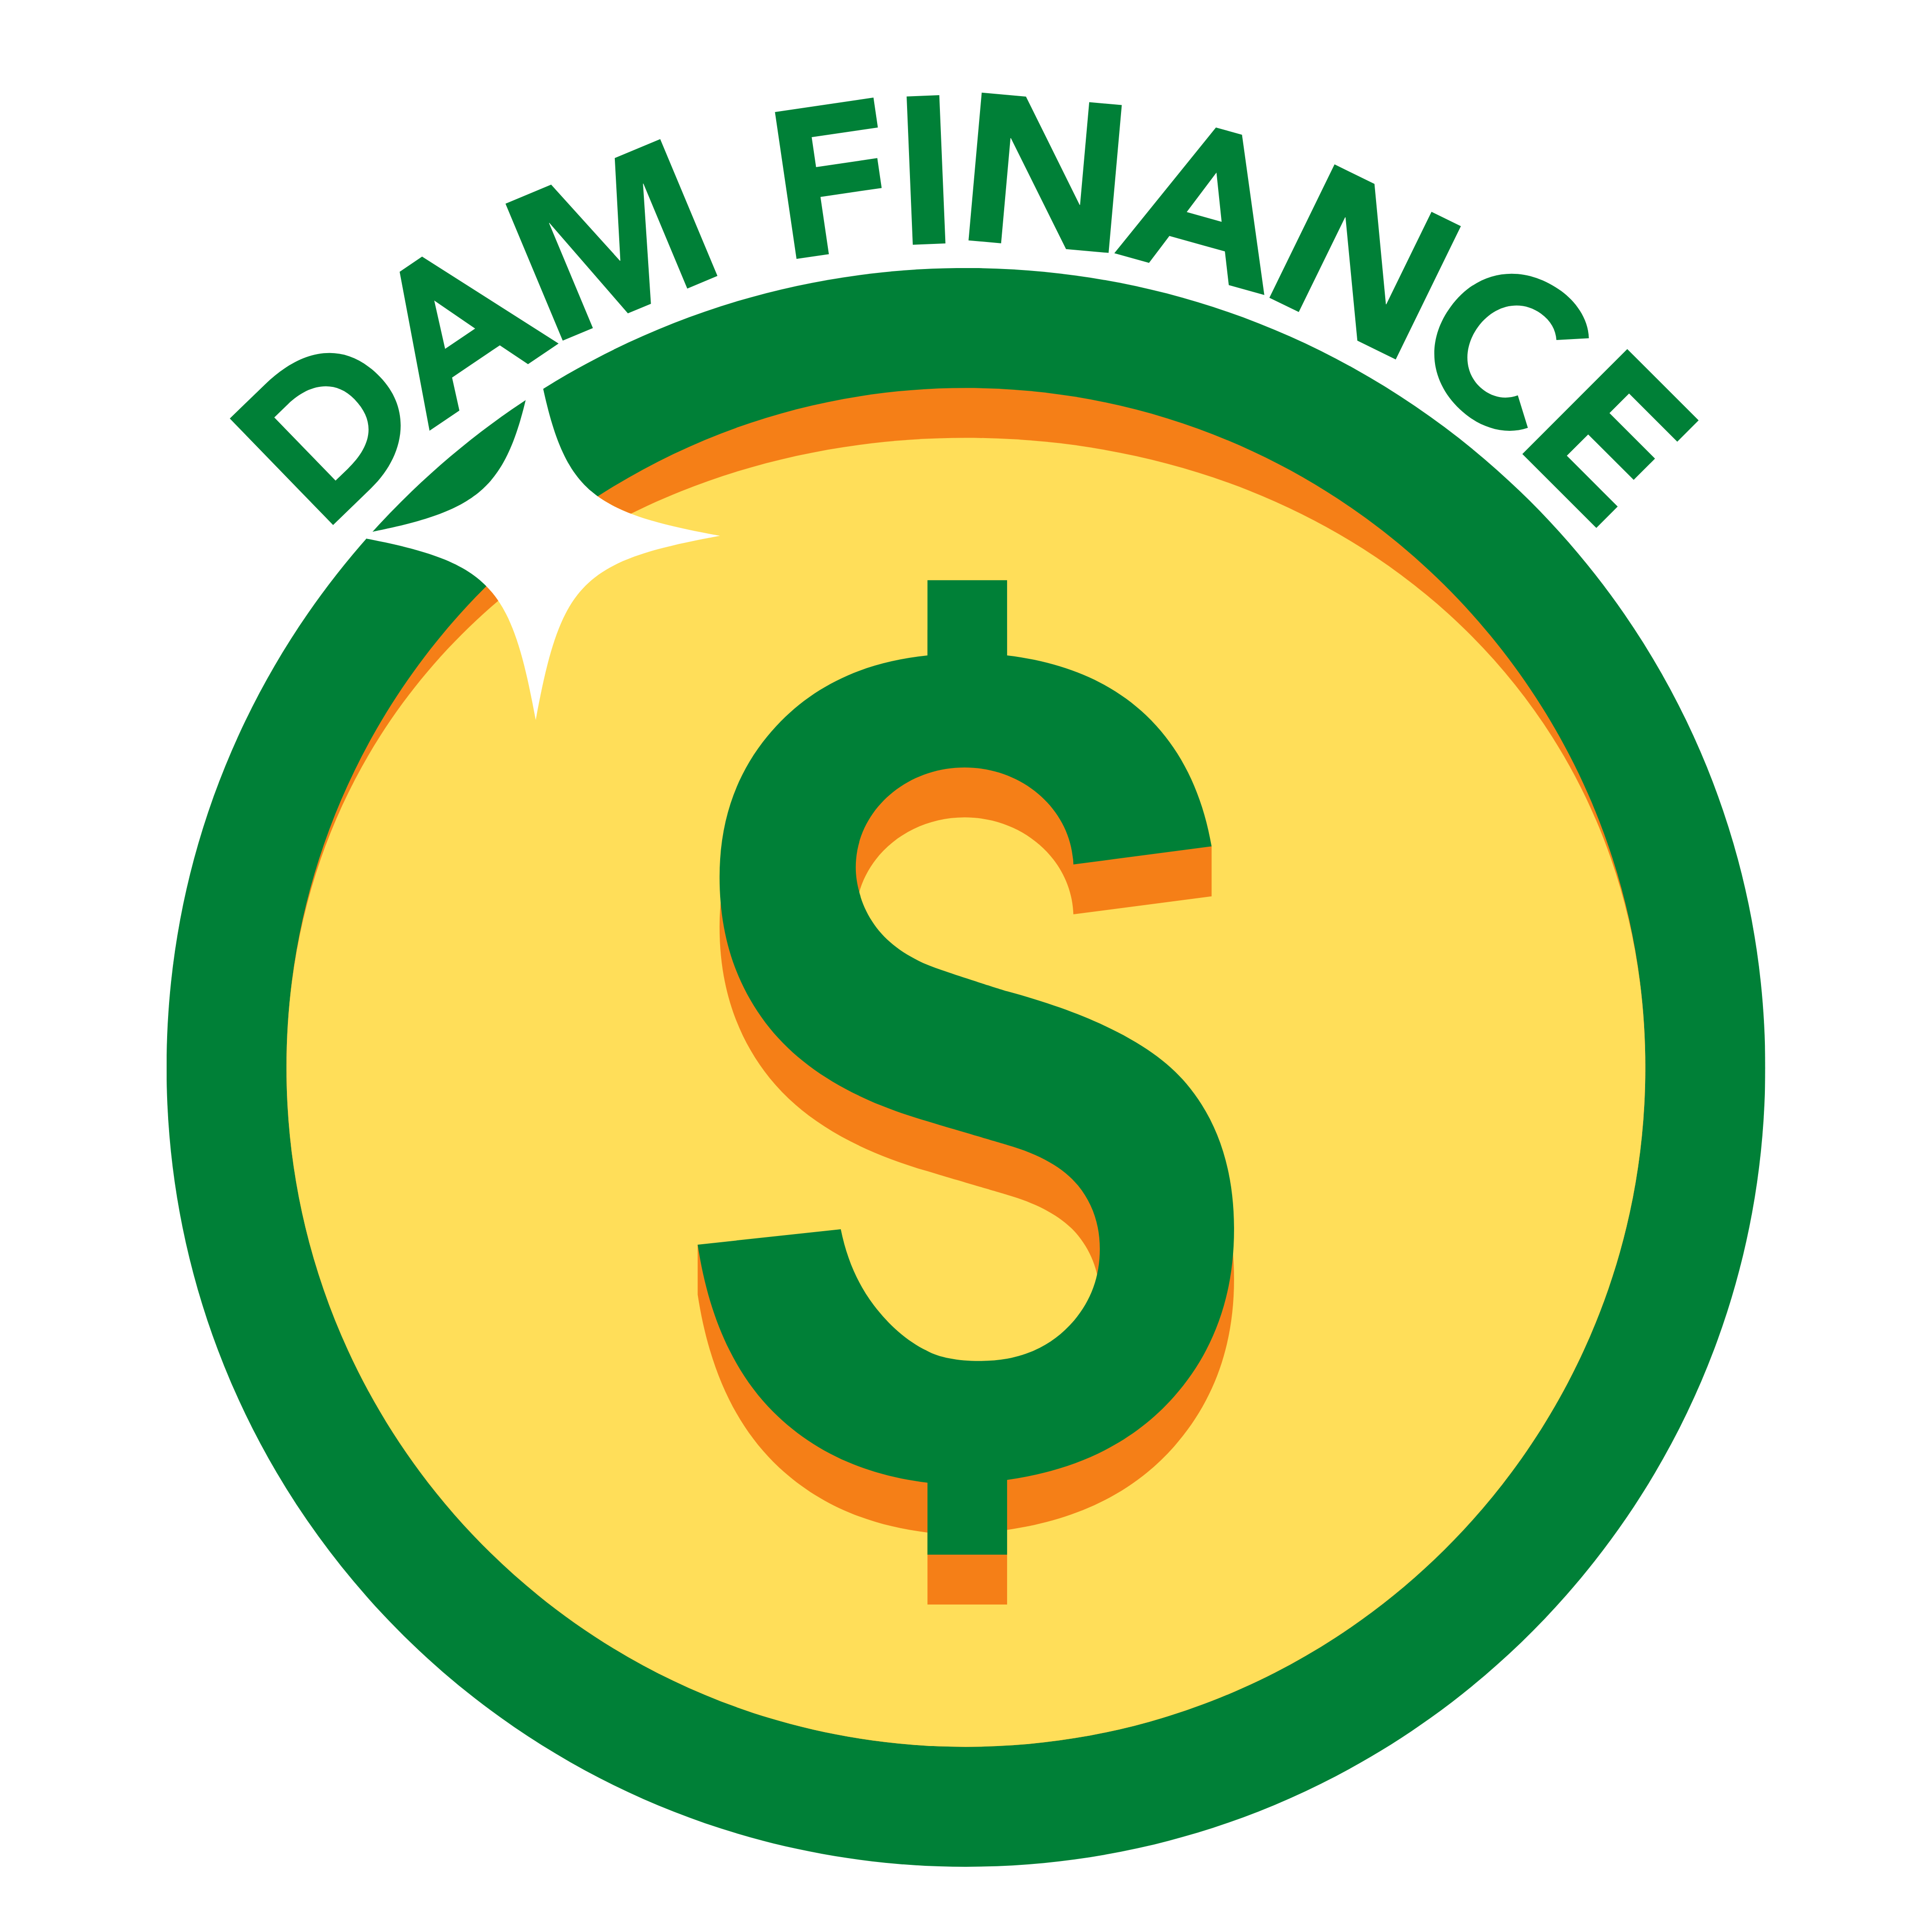 DAM Finance